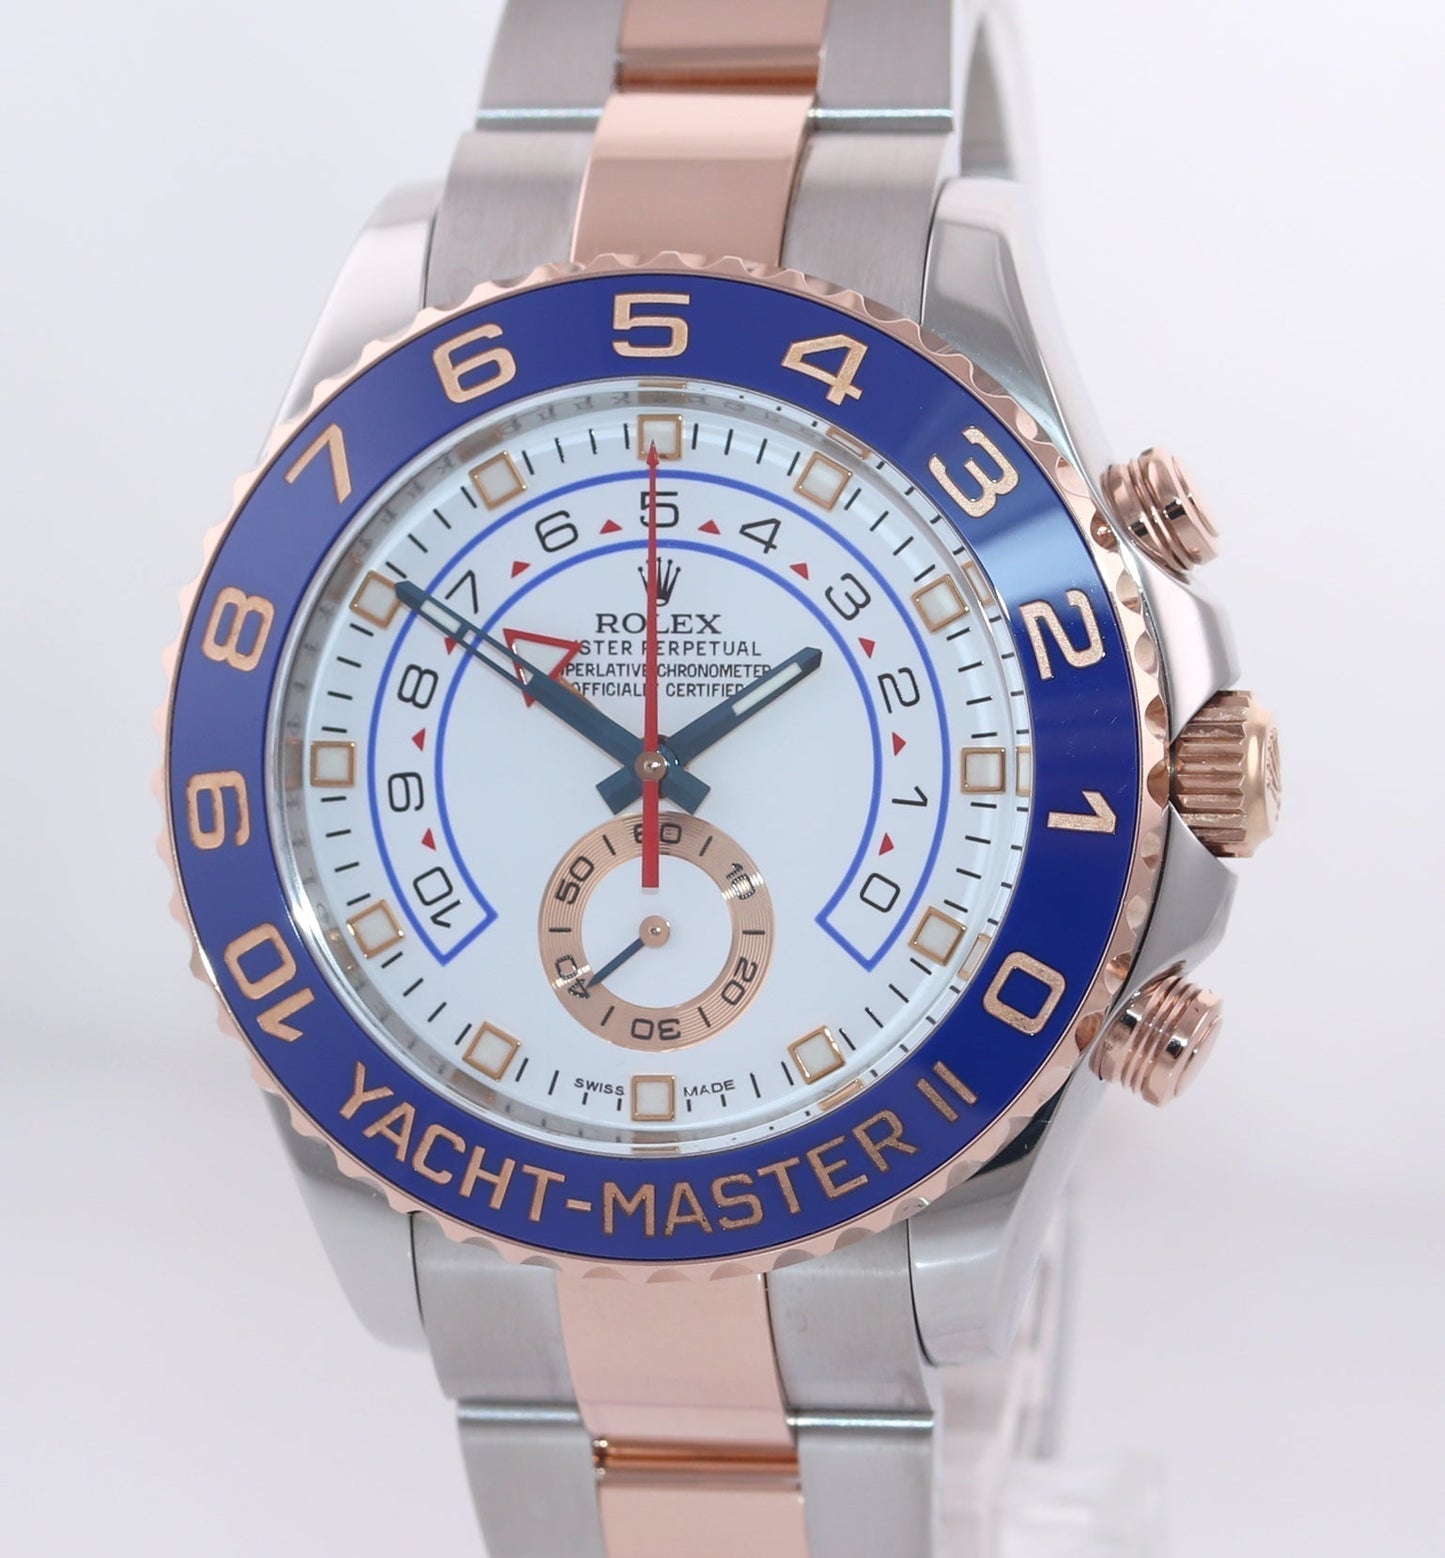 MINT 2017 Rolex Yacht-Master II 116681 Steel Everose Gold Blue hands 44mm Watch Box